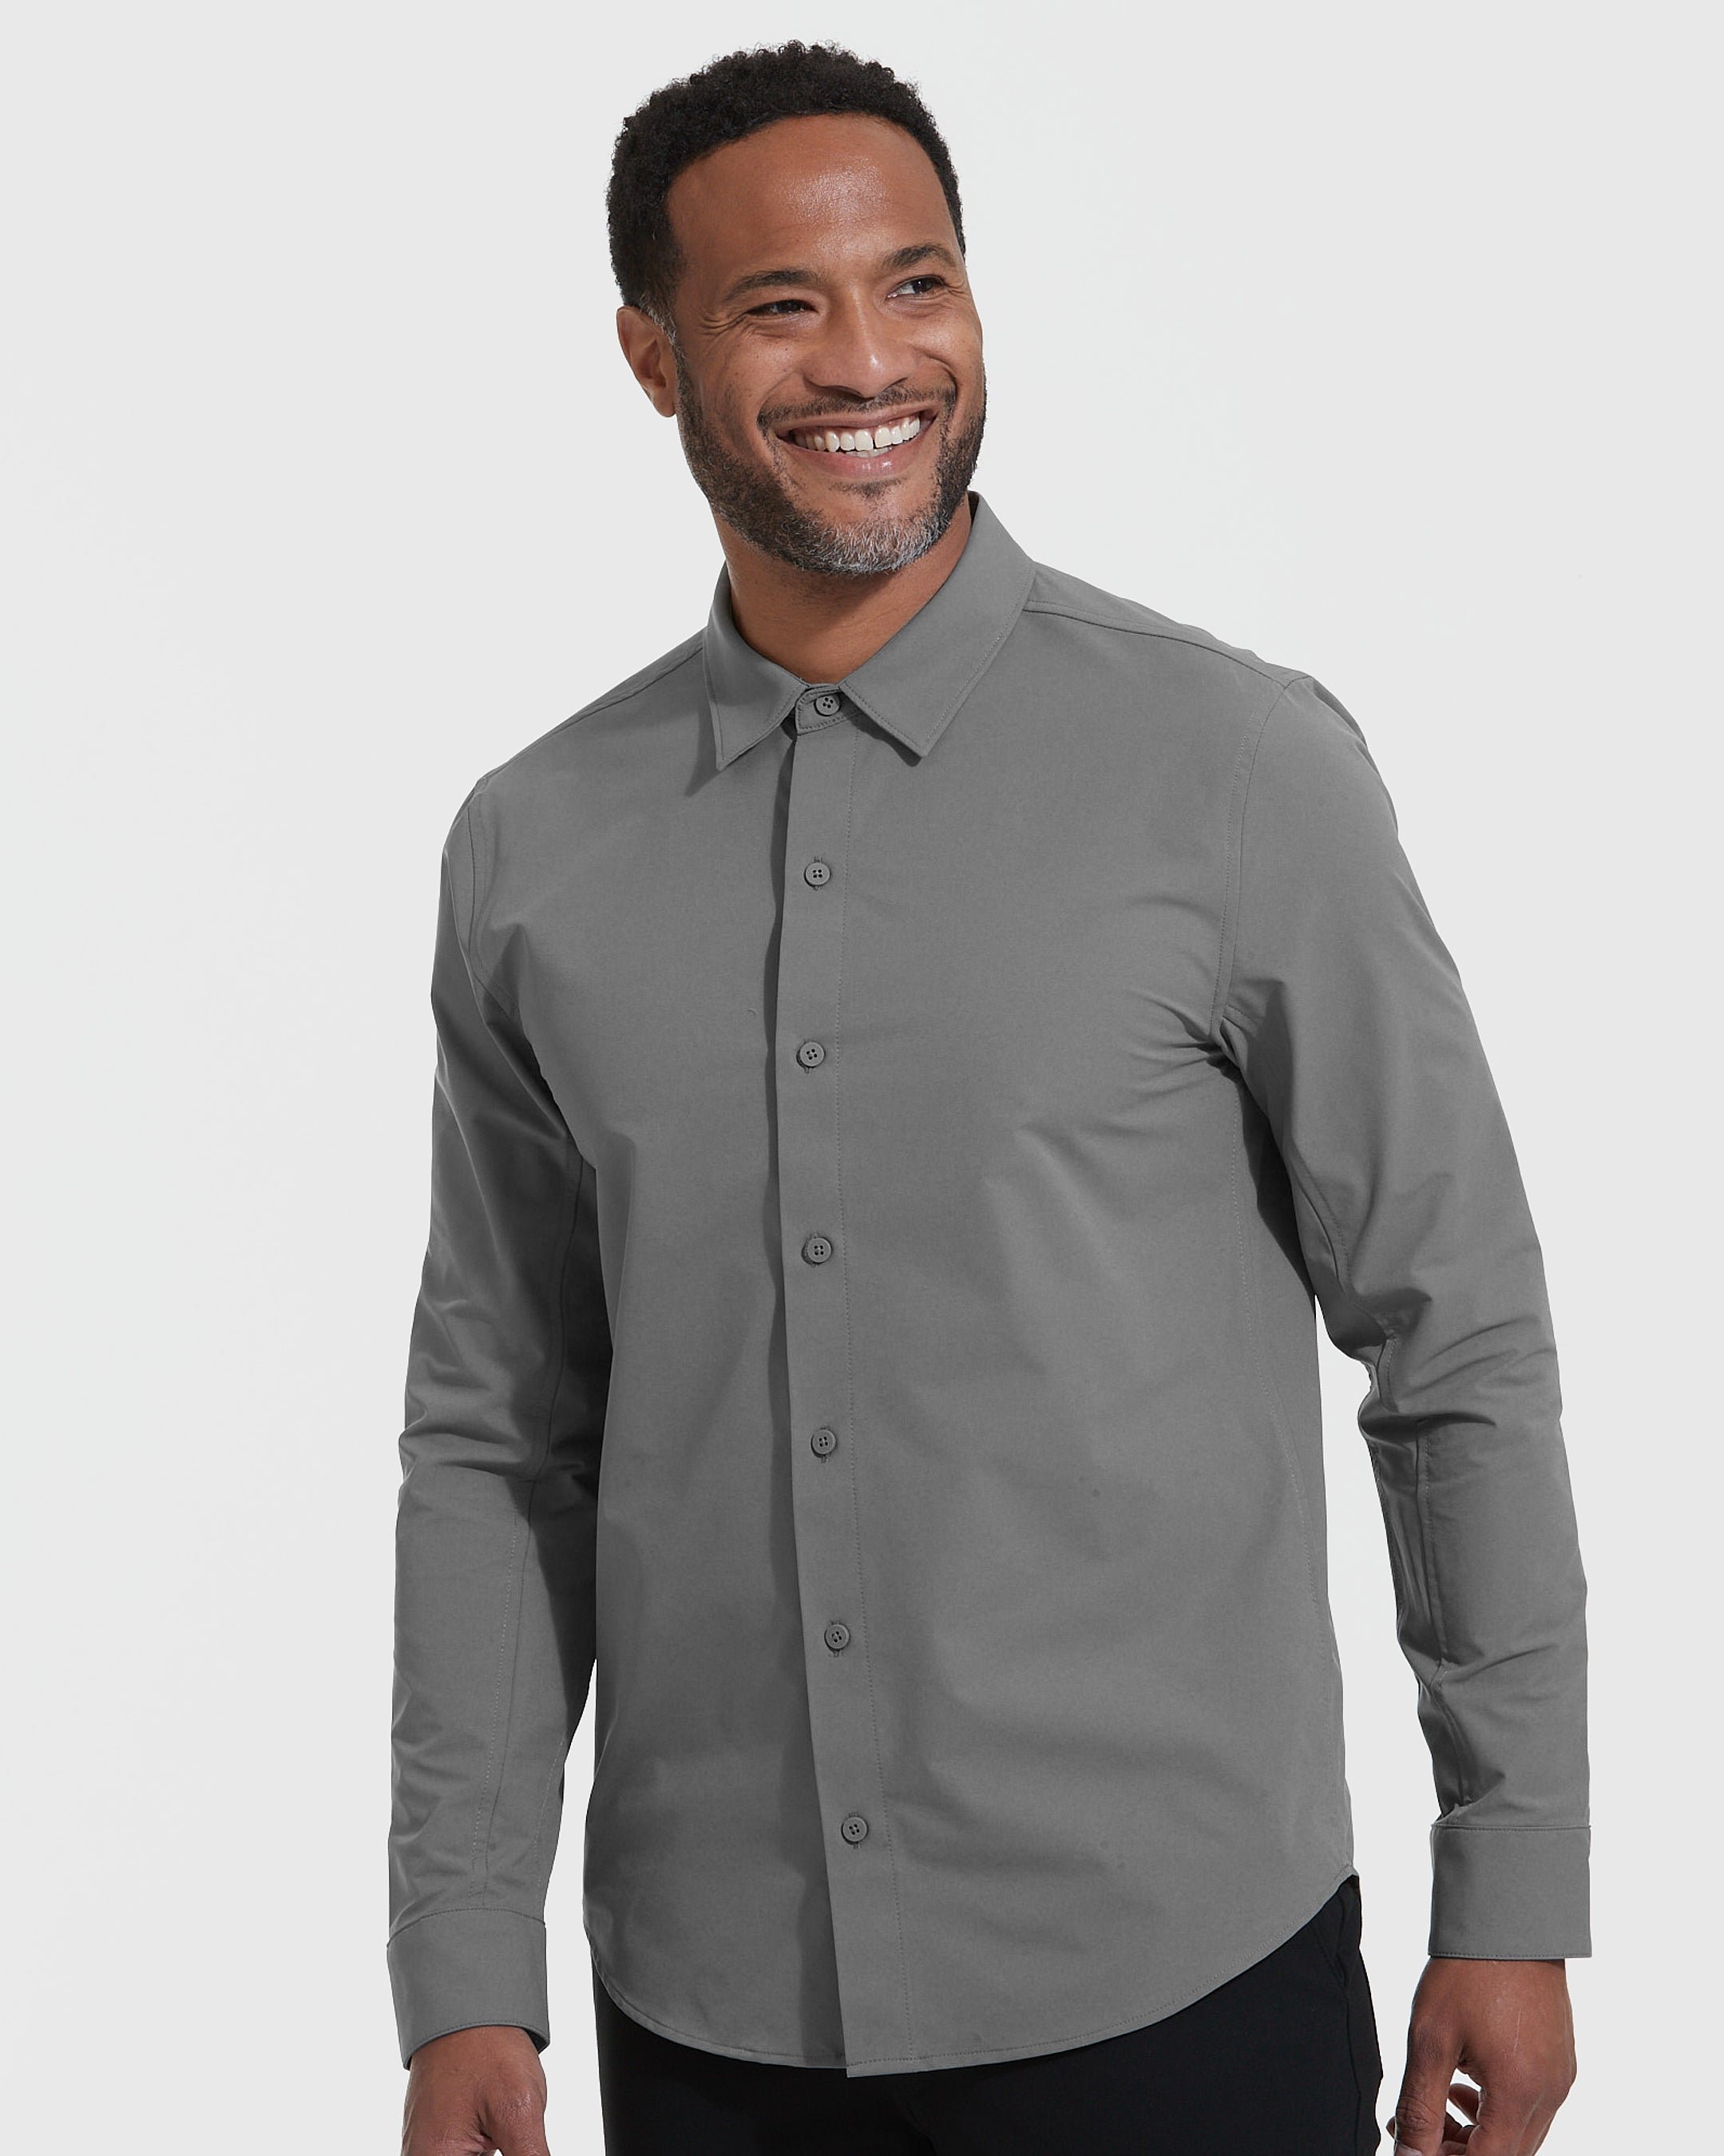 Carbon Commuter Long Sleeve Button Up Shirt